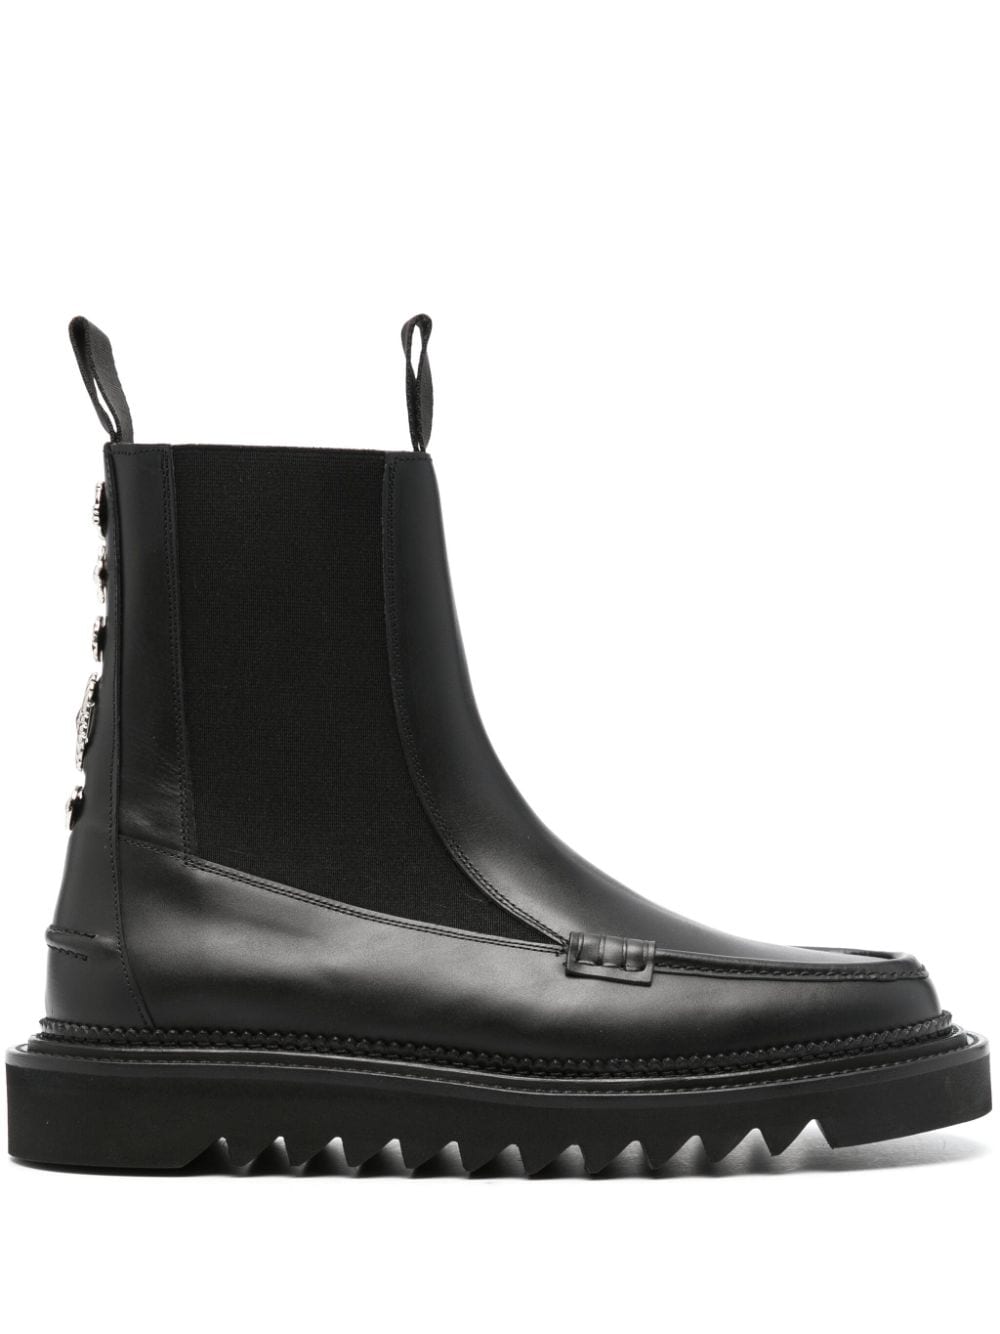 Toga Virilis stud-embellished leather boots - Black von Toga Virilis